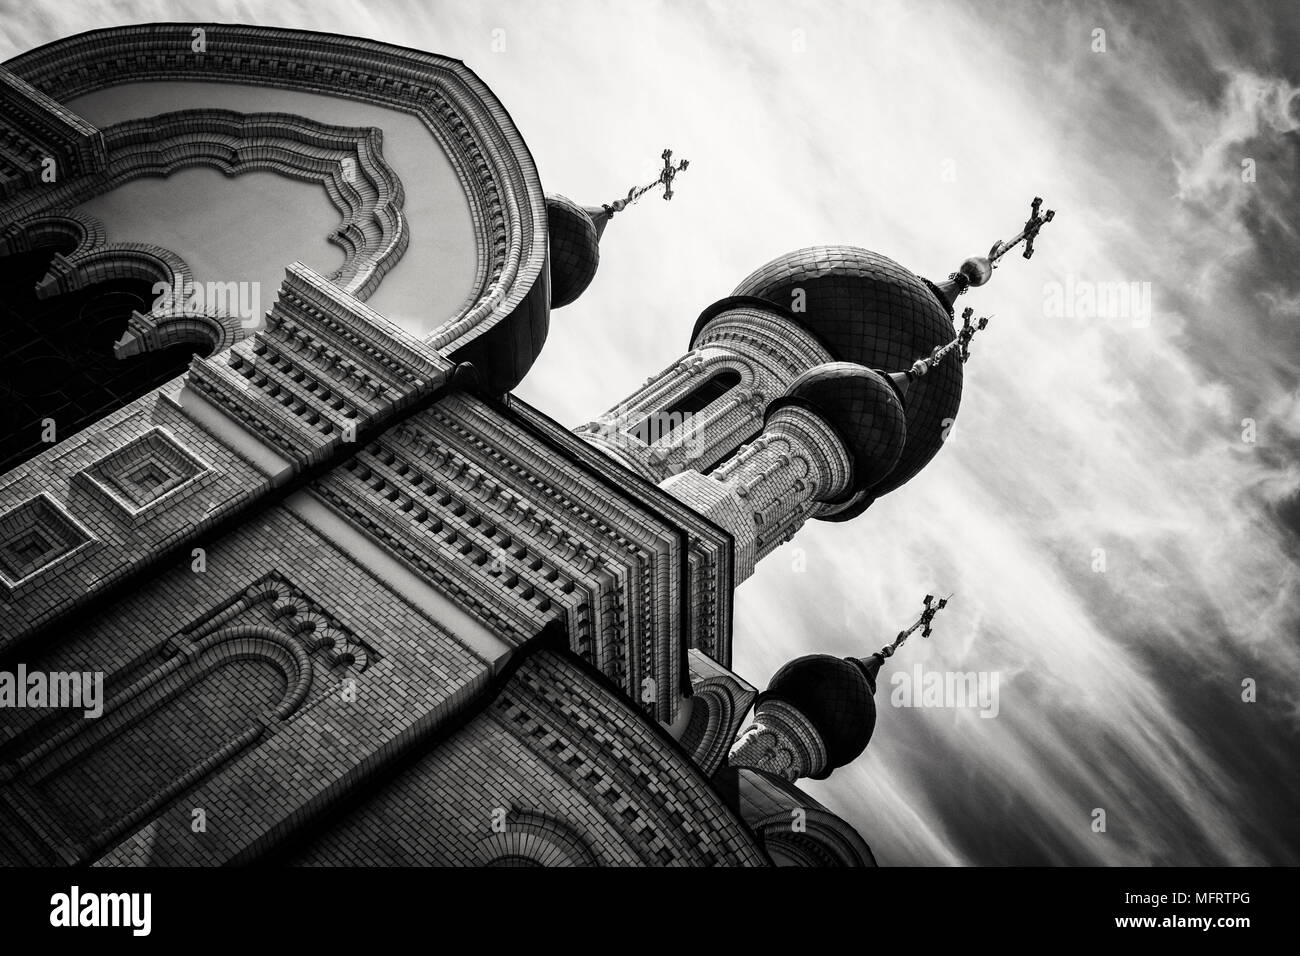 Russischen Zwiebeltürme - Kirche der Kasaner Ikone der Mutter Gottes in der Mission Sitz des Kloster Walaam in St. Petersburg, Russland Stockfoto